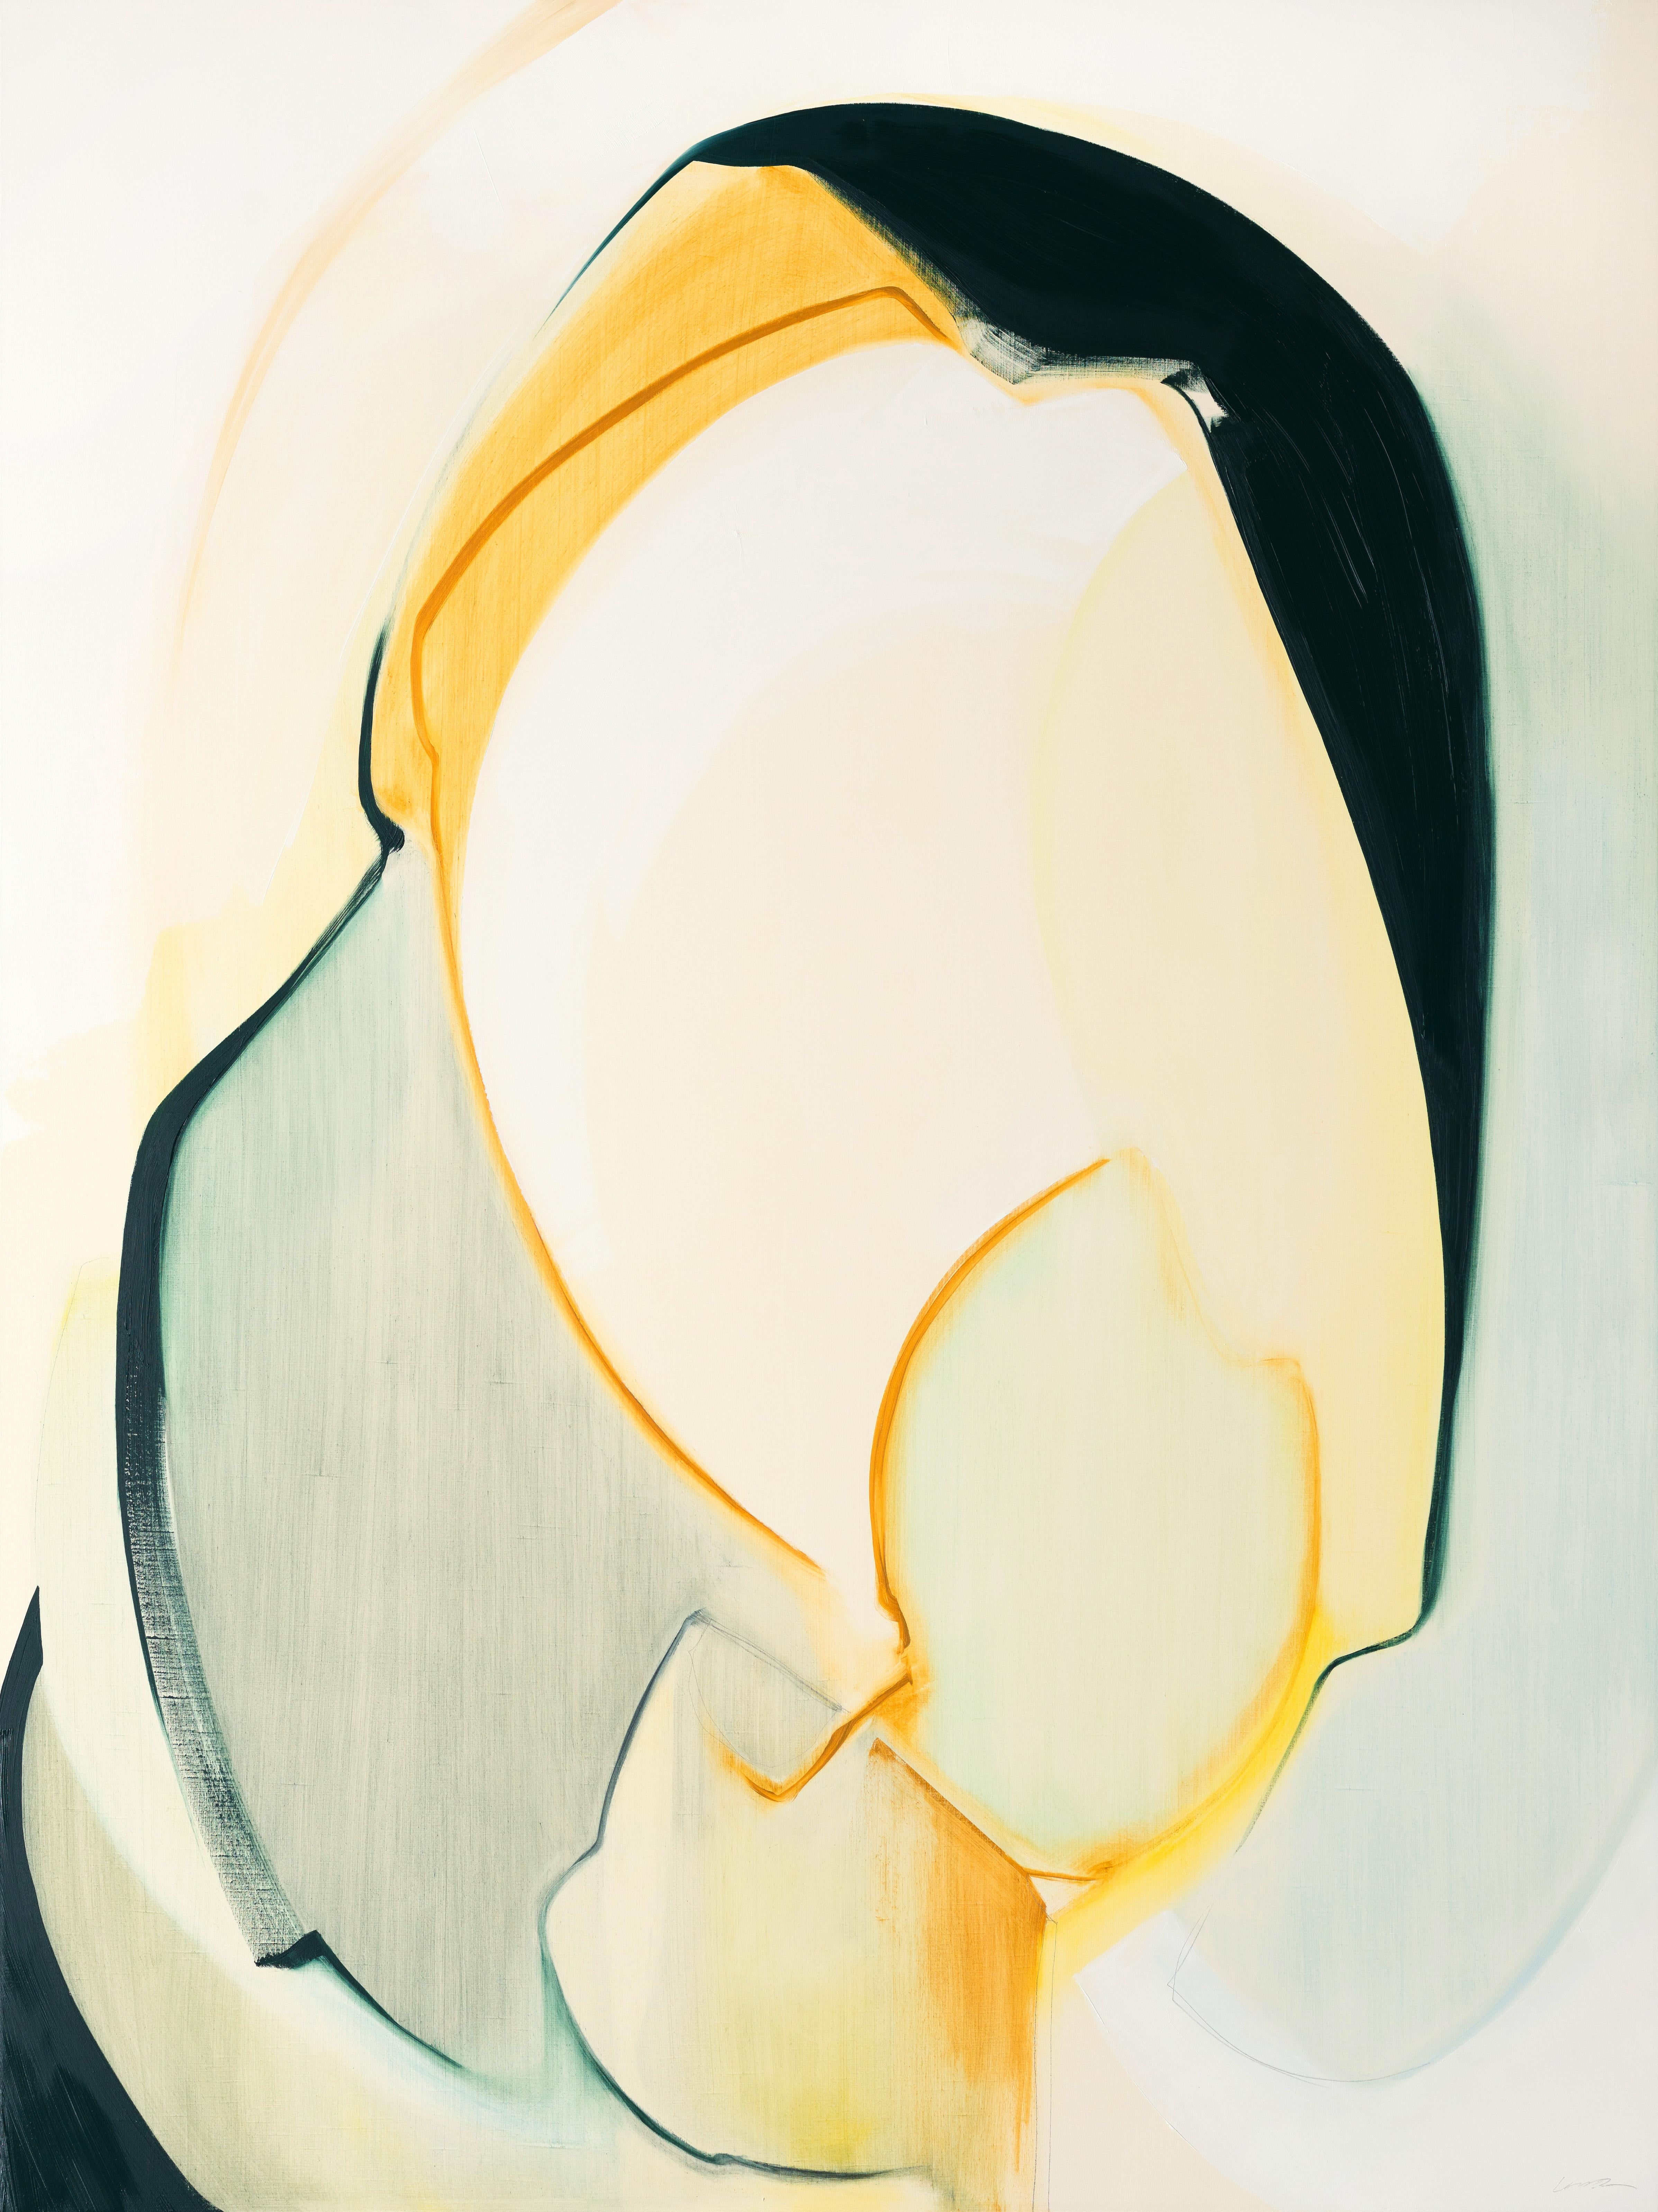 Généreux,  Abstrait, huile, graphite, panneau de bois, jaune, noir, blanc - Mixed Media Art de Rose Umerlik